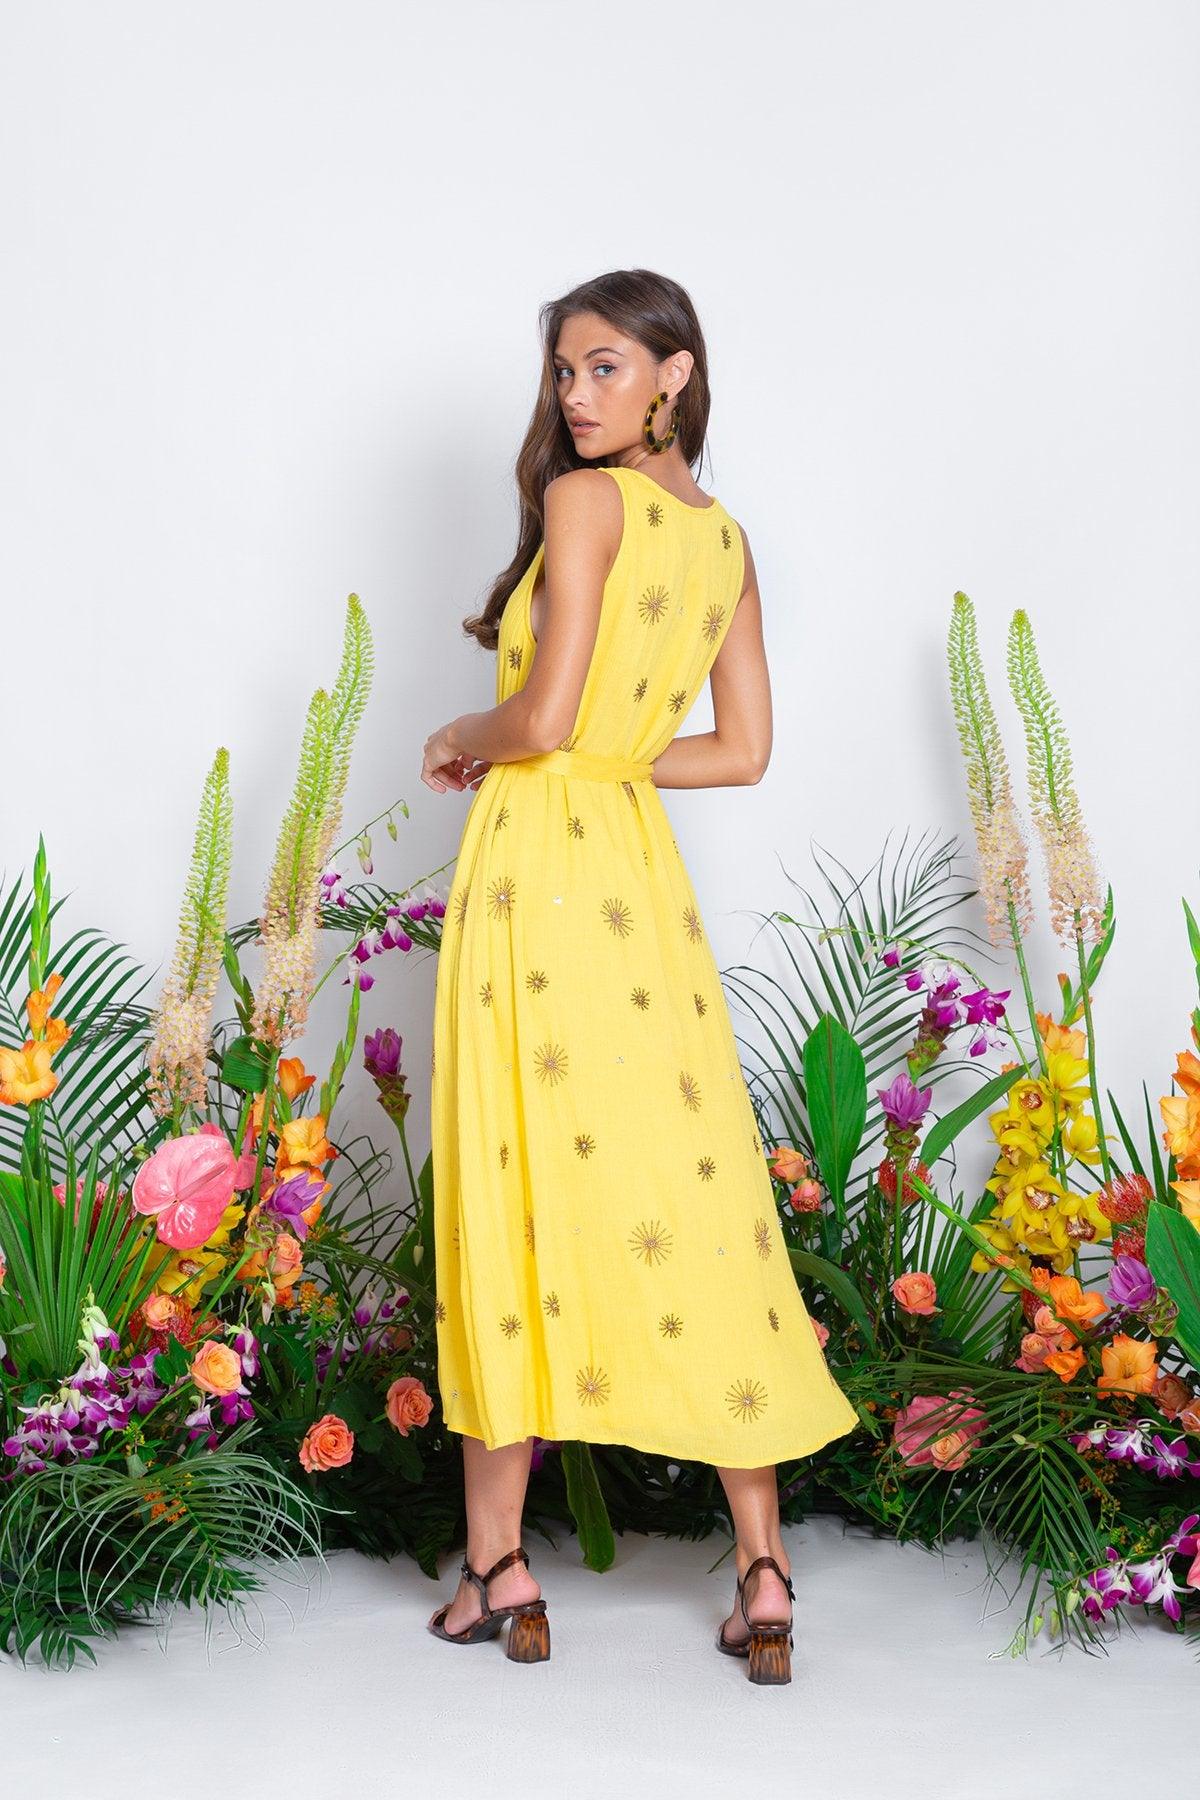 Sundress - Bonheur Maxi Dress in Golden Sun - OutDazl